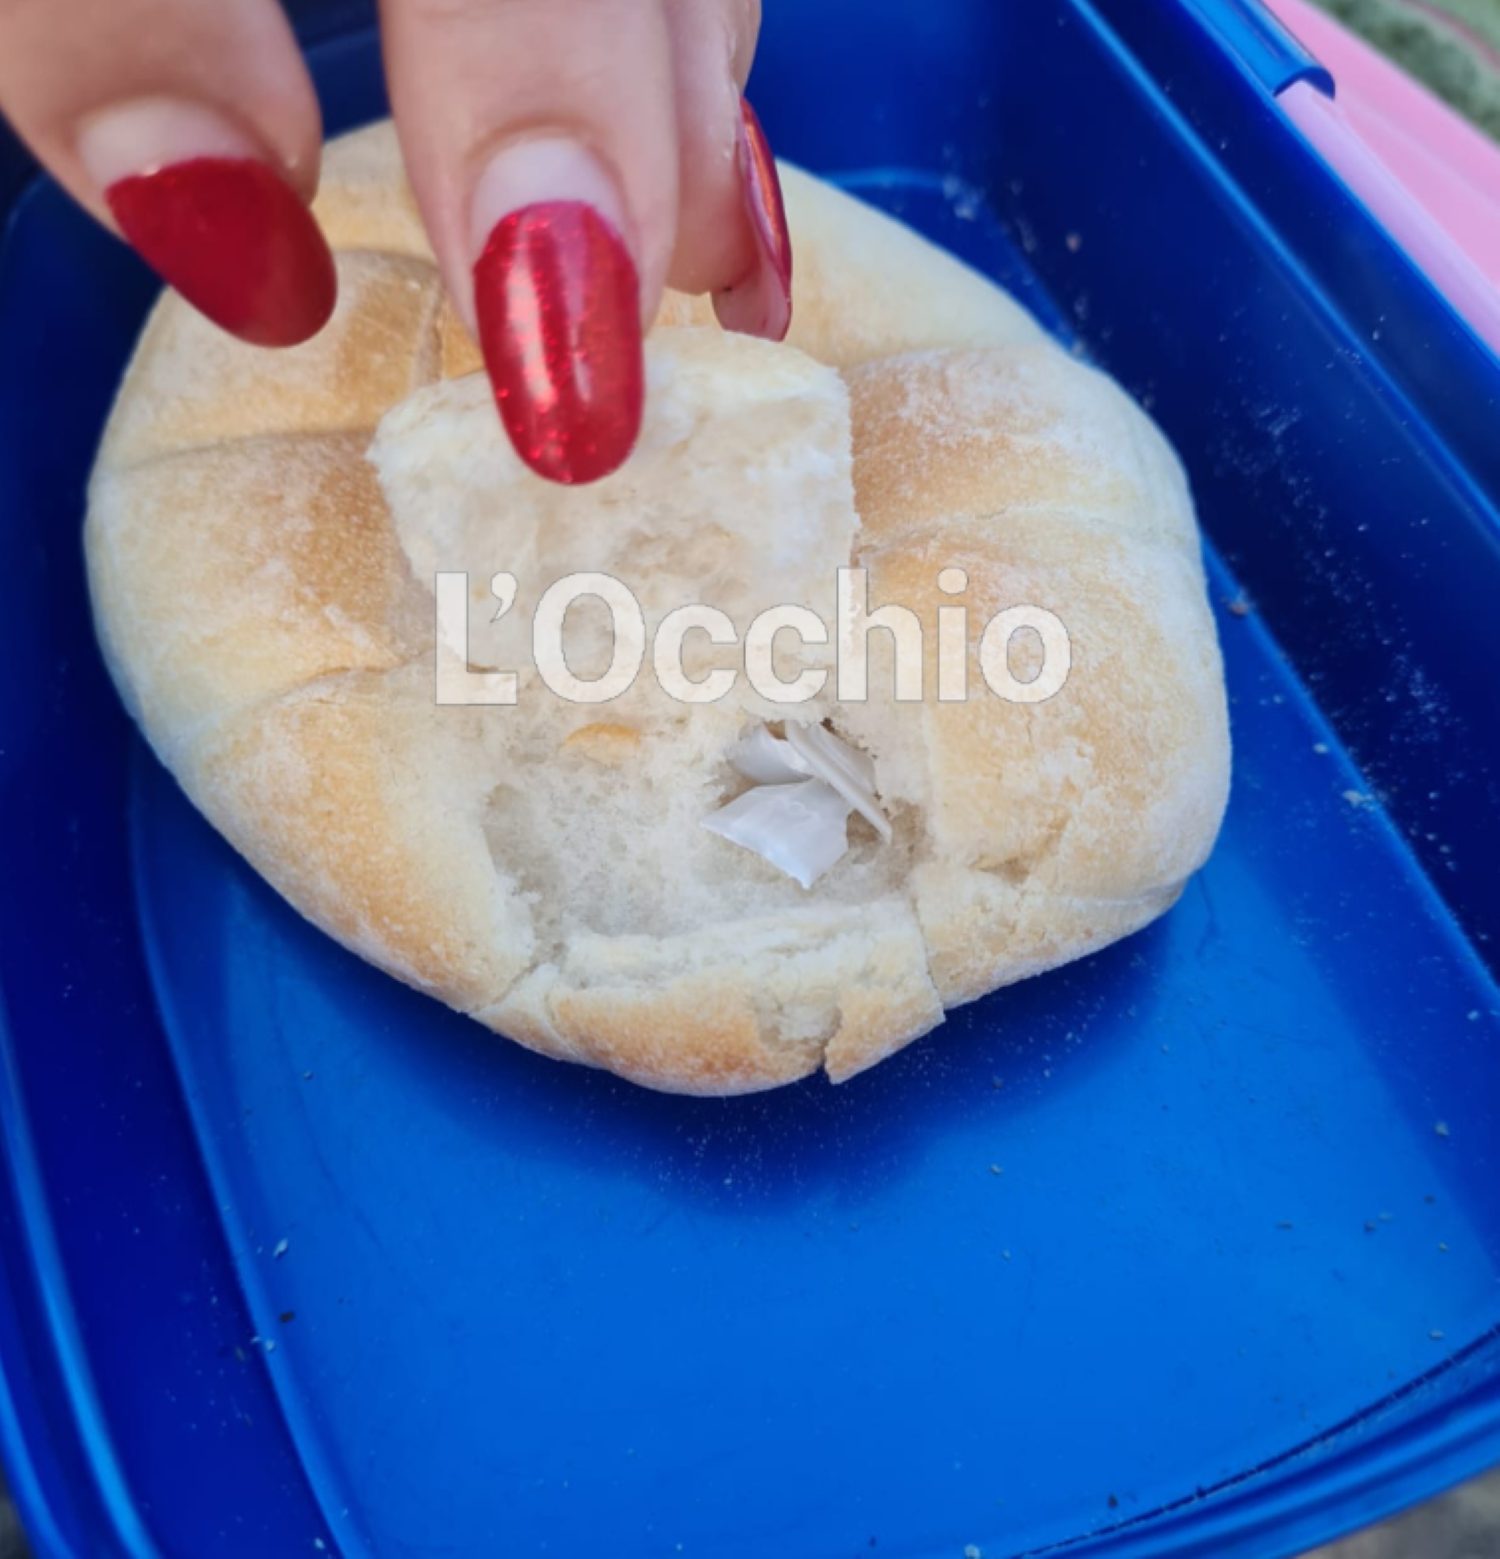 Plastica in un panino a scuola a Battipaglia